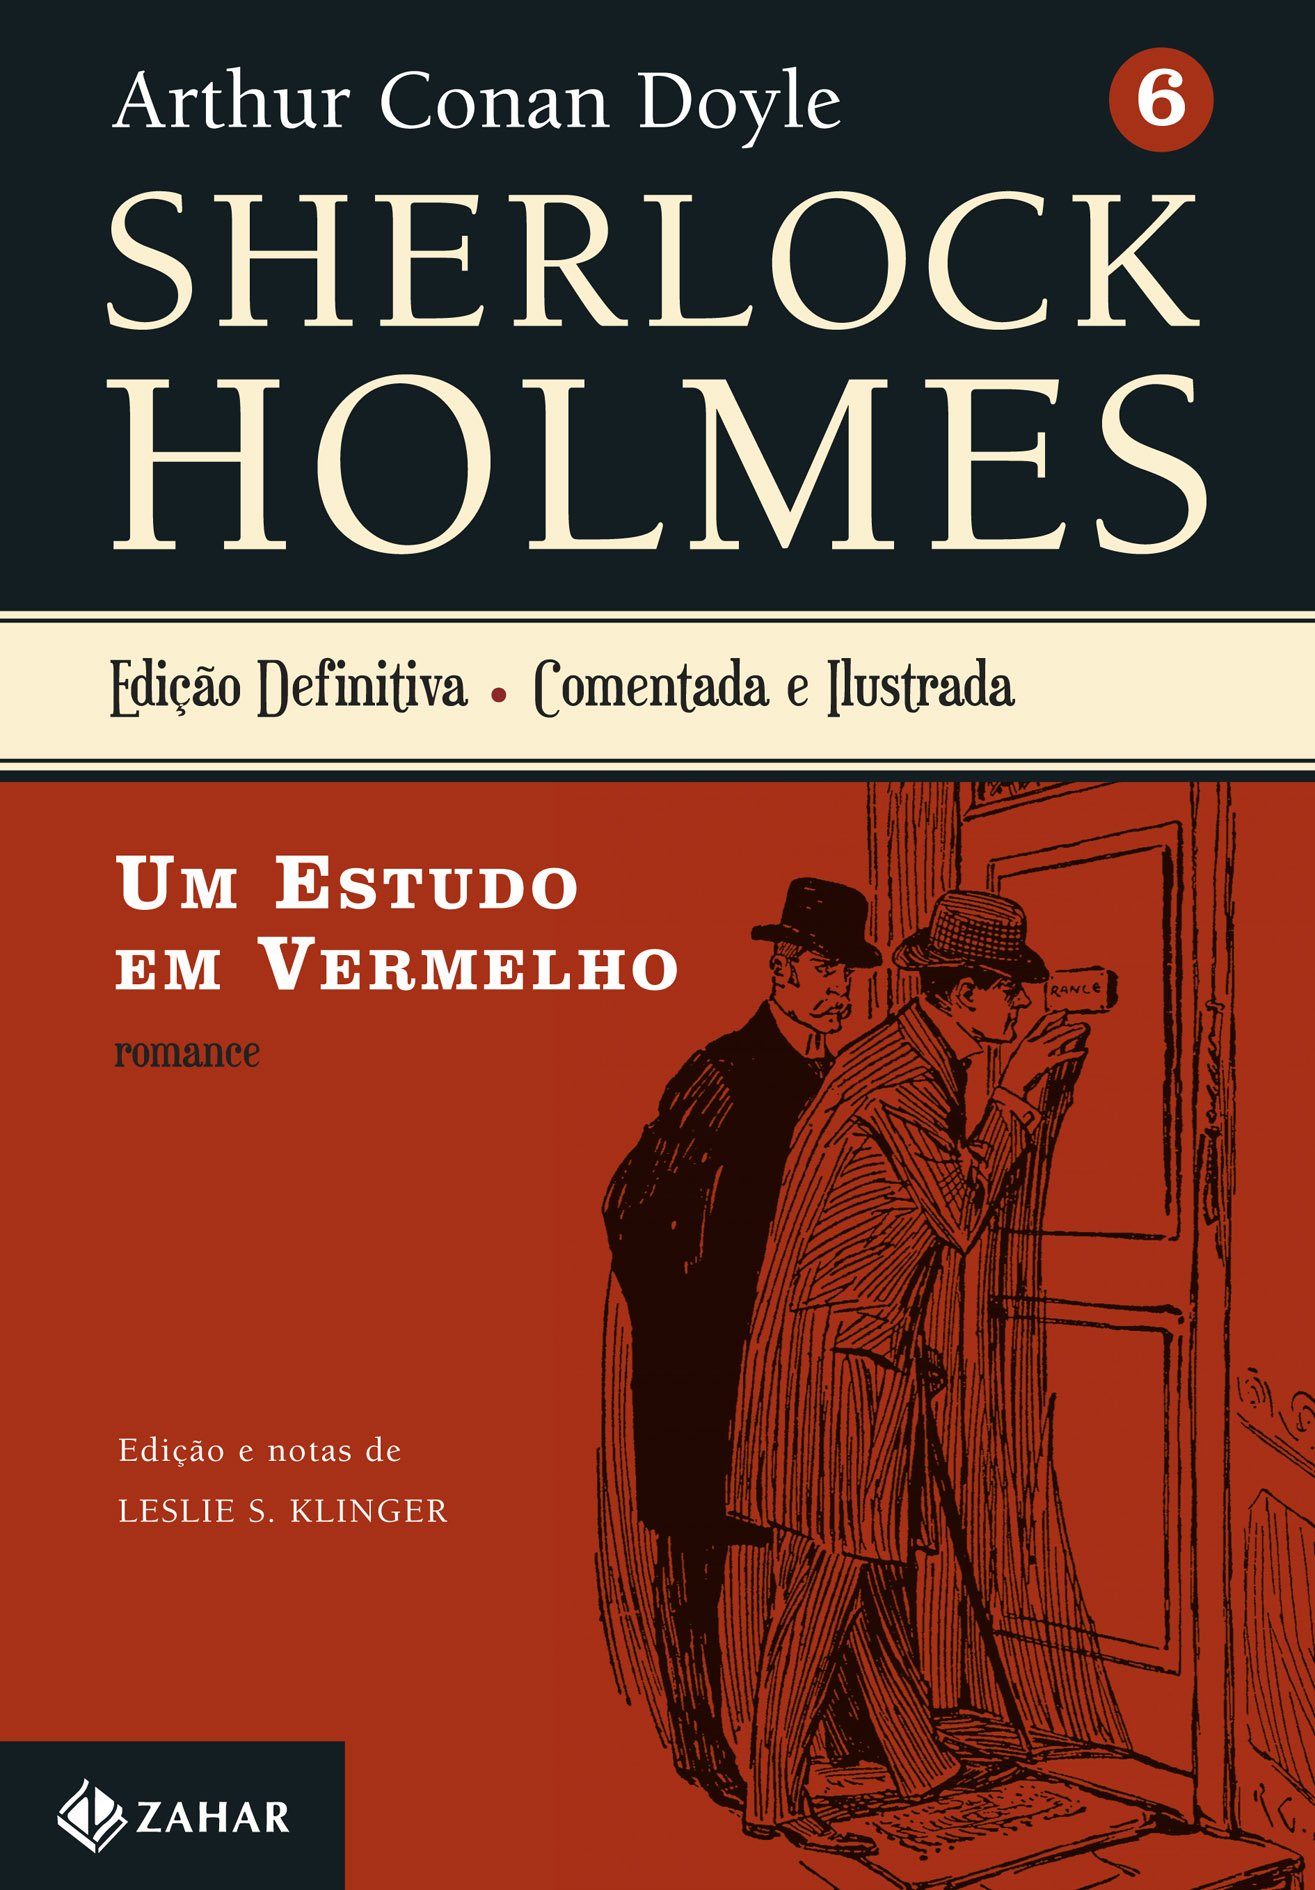 Resenha | Sherlock Holmes: Um Estudo em Vermelho – Arthur Conan Doyle